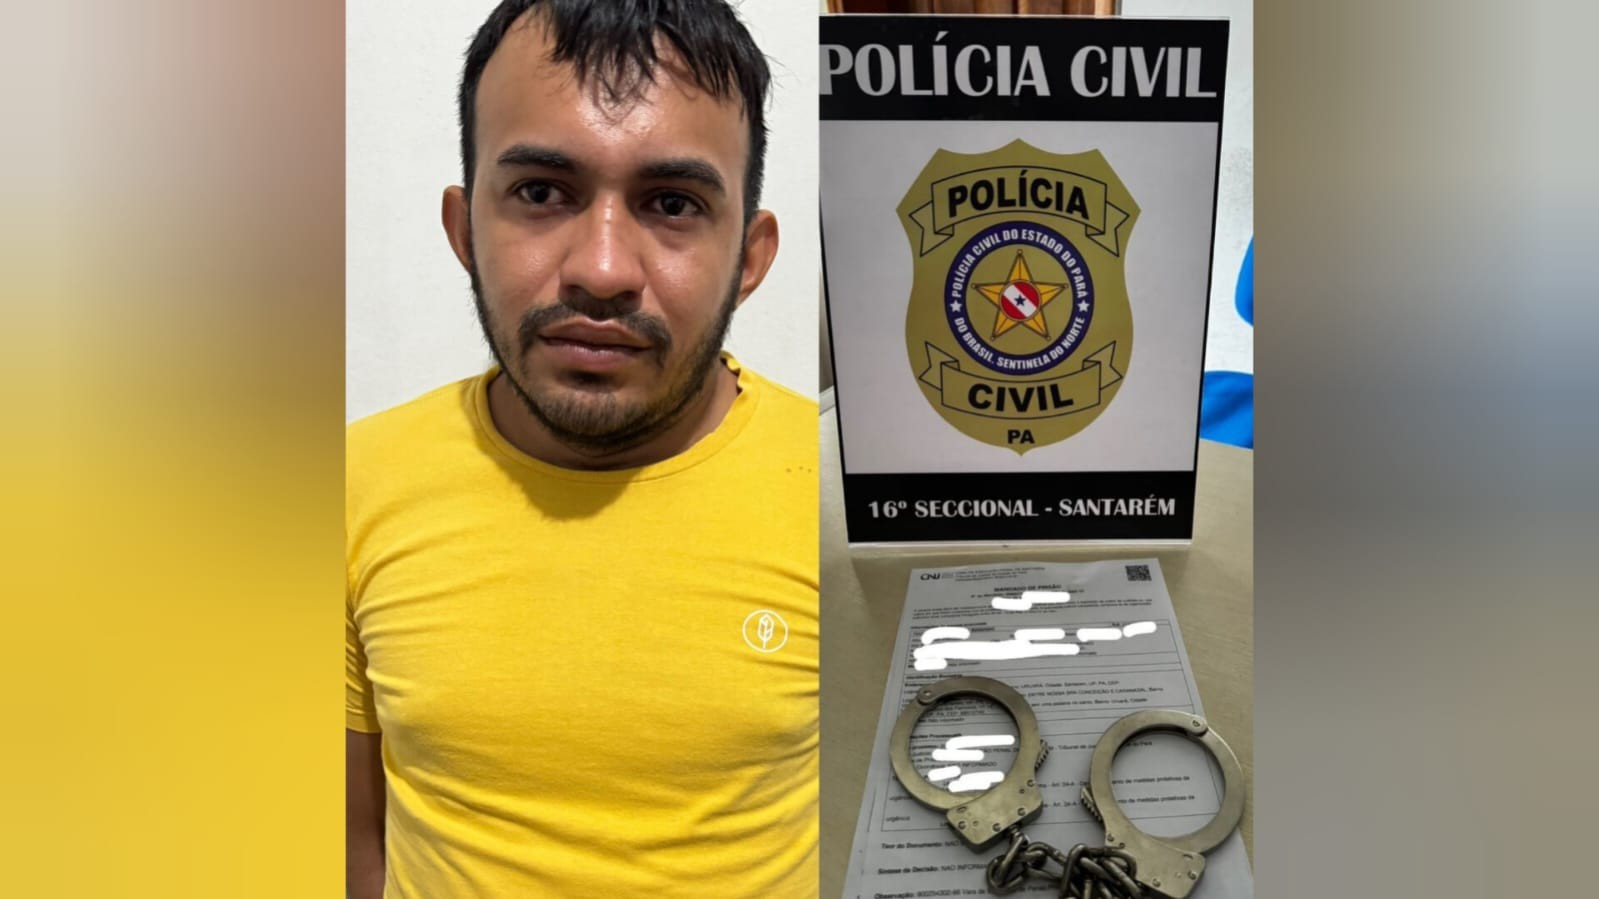 Condenado a mais de 2 anos por furto é preso pela Polícia Civil no trabalho, em Santarém